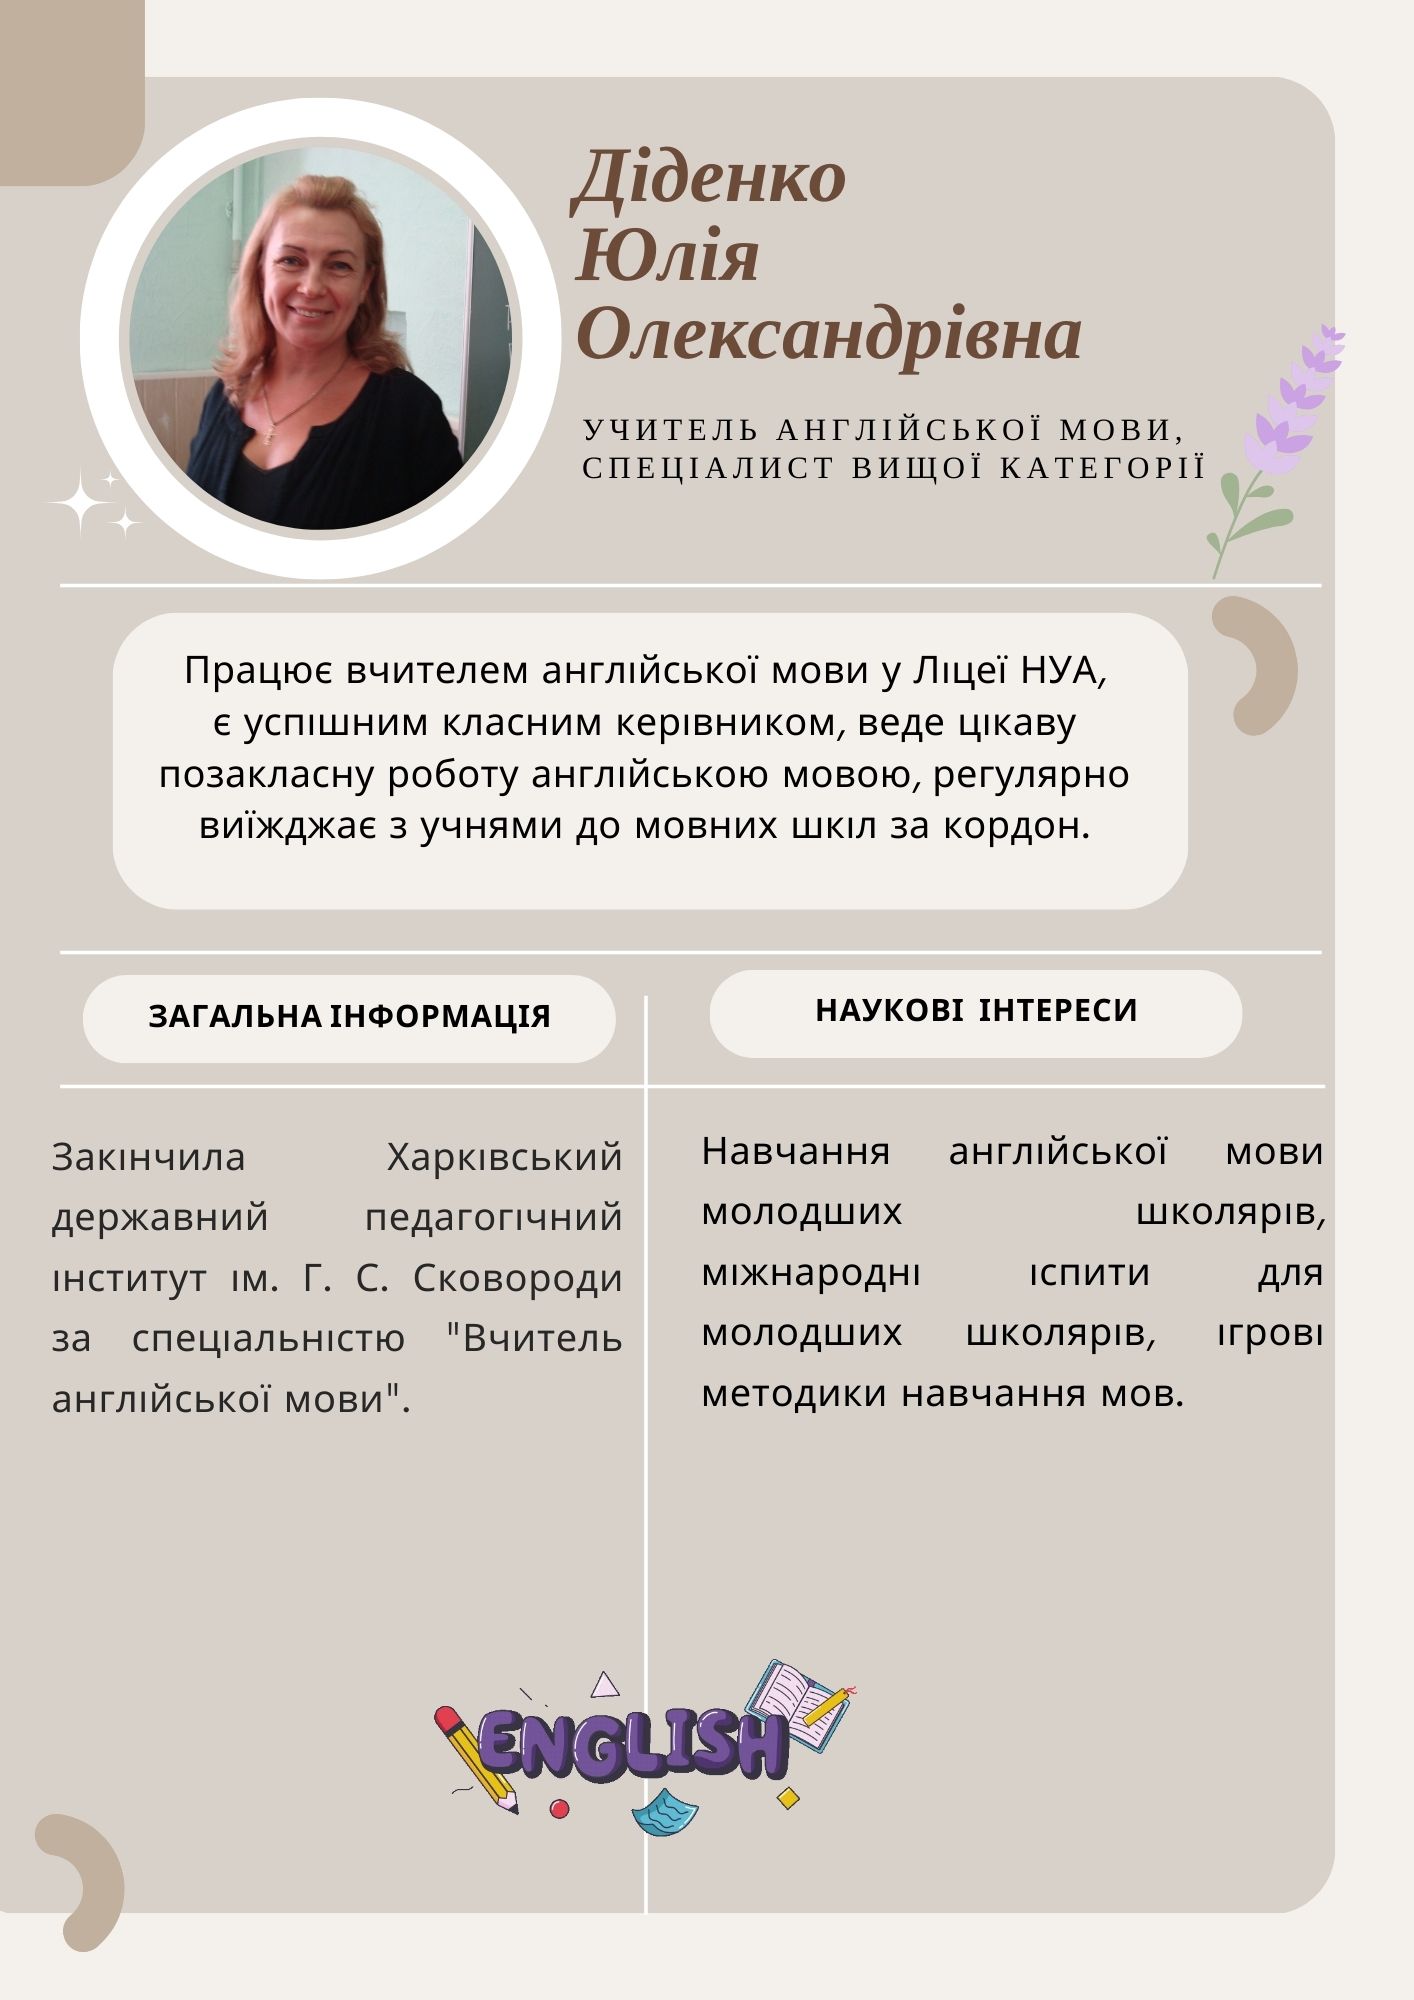 Діденко Юлія Олександрівна,  учитель англійської мови, спеціаліст вищої категорії